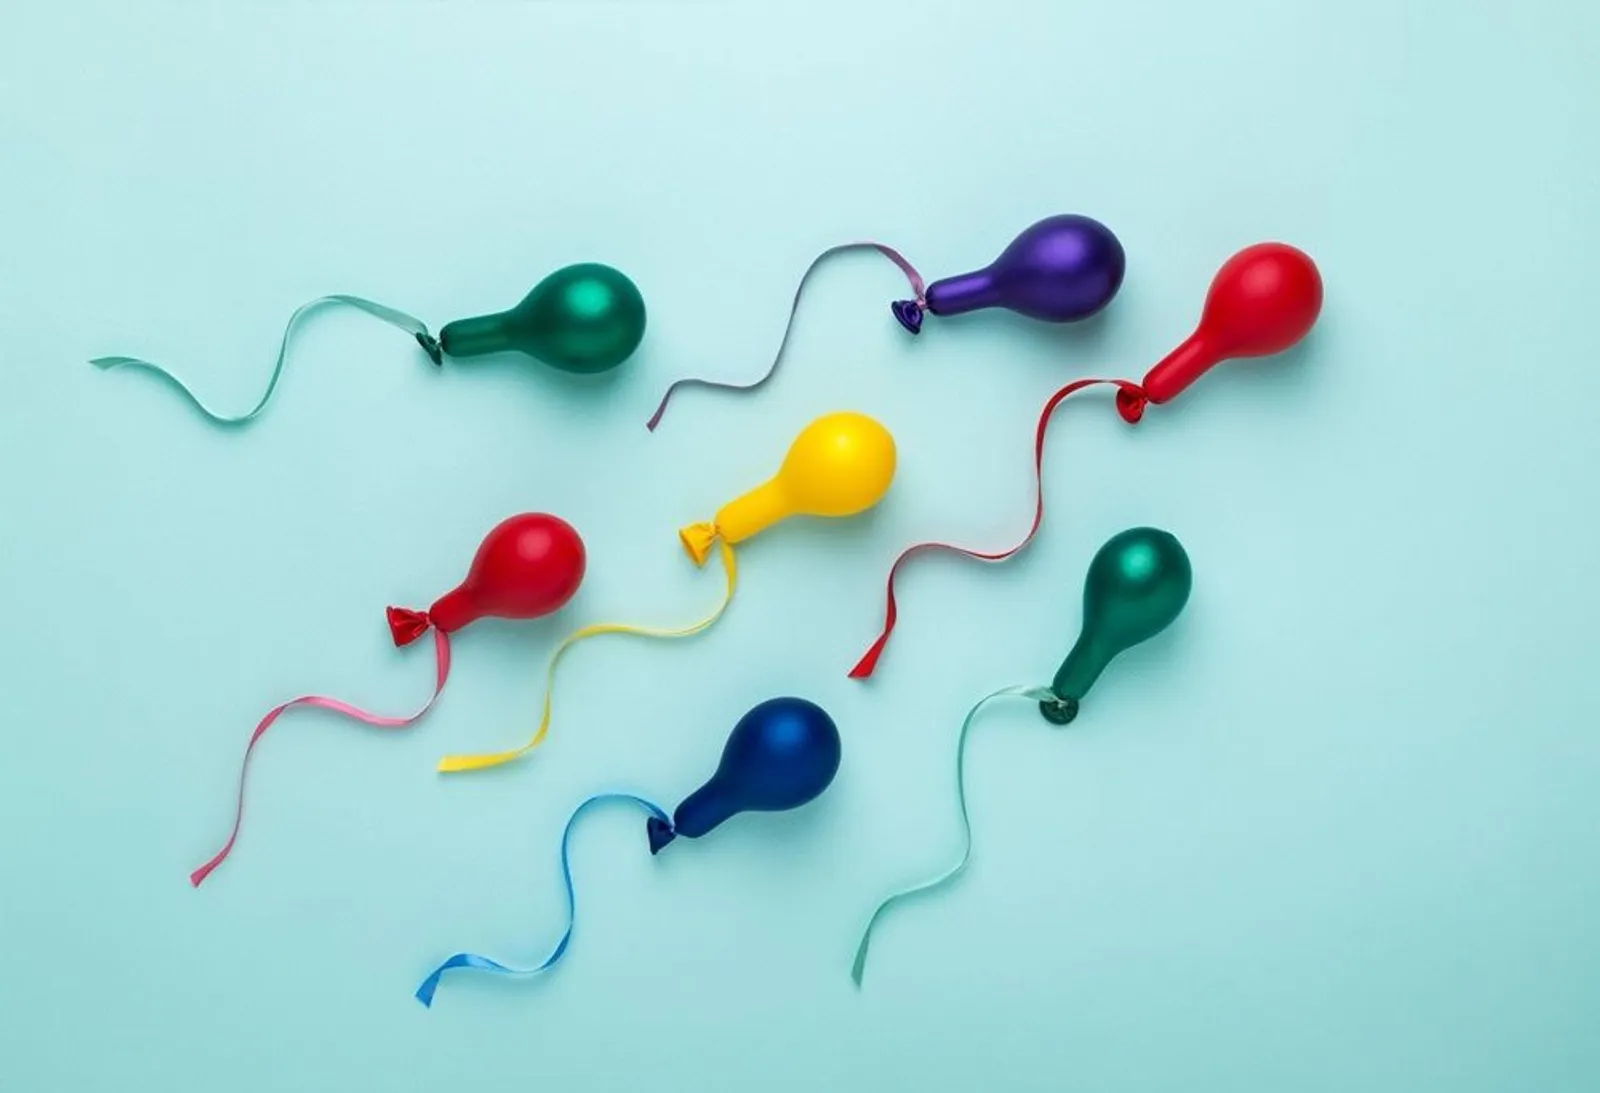 Menelan Sperma Bisa Menyebabkan Kehamilan, Mitos atau Fakta?